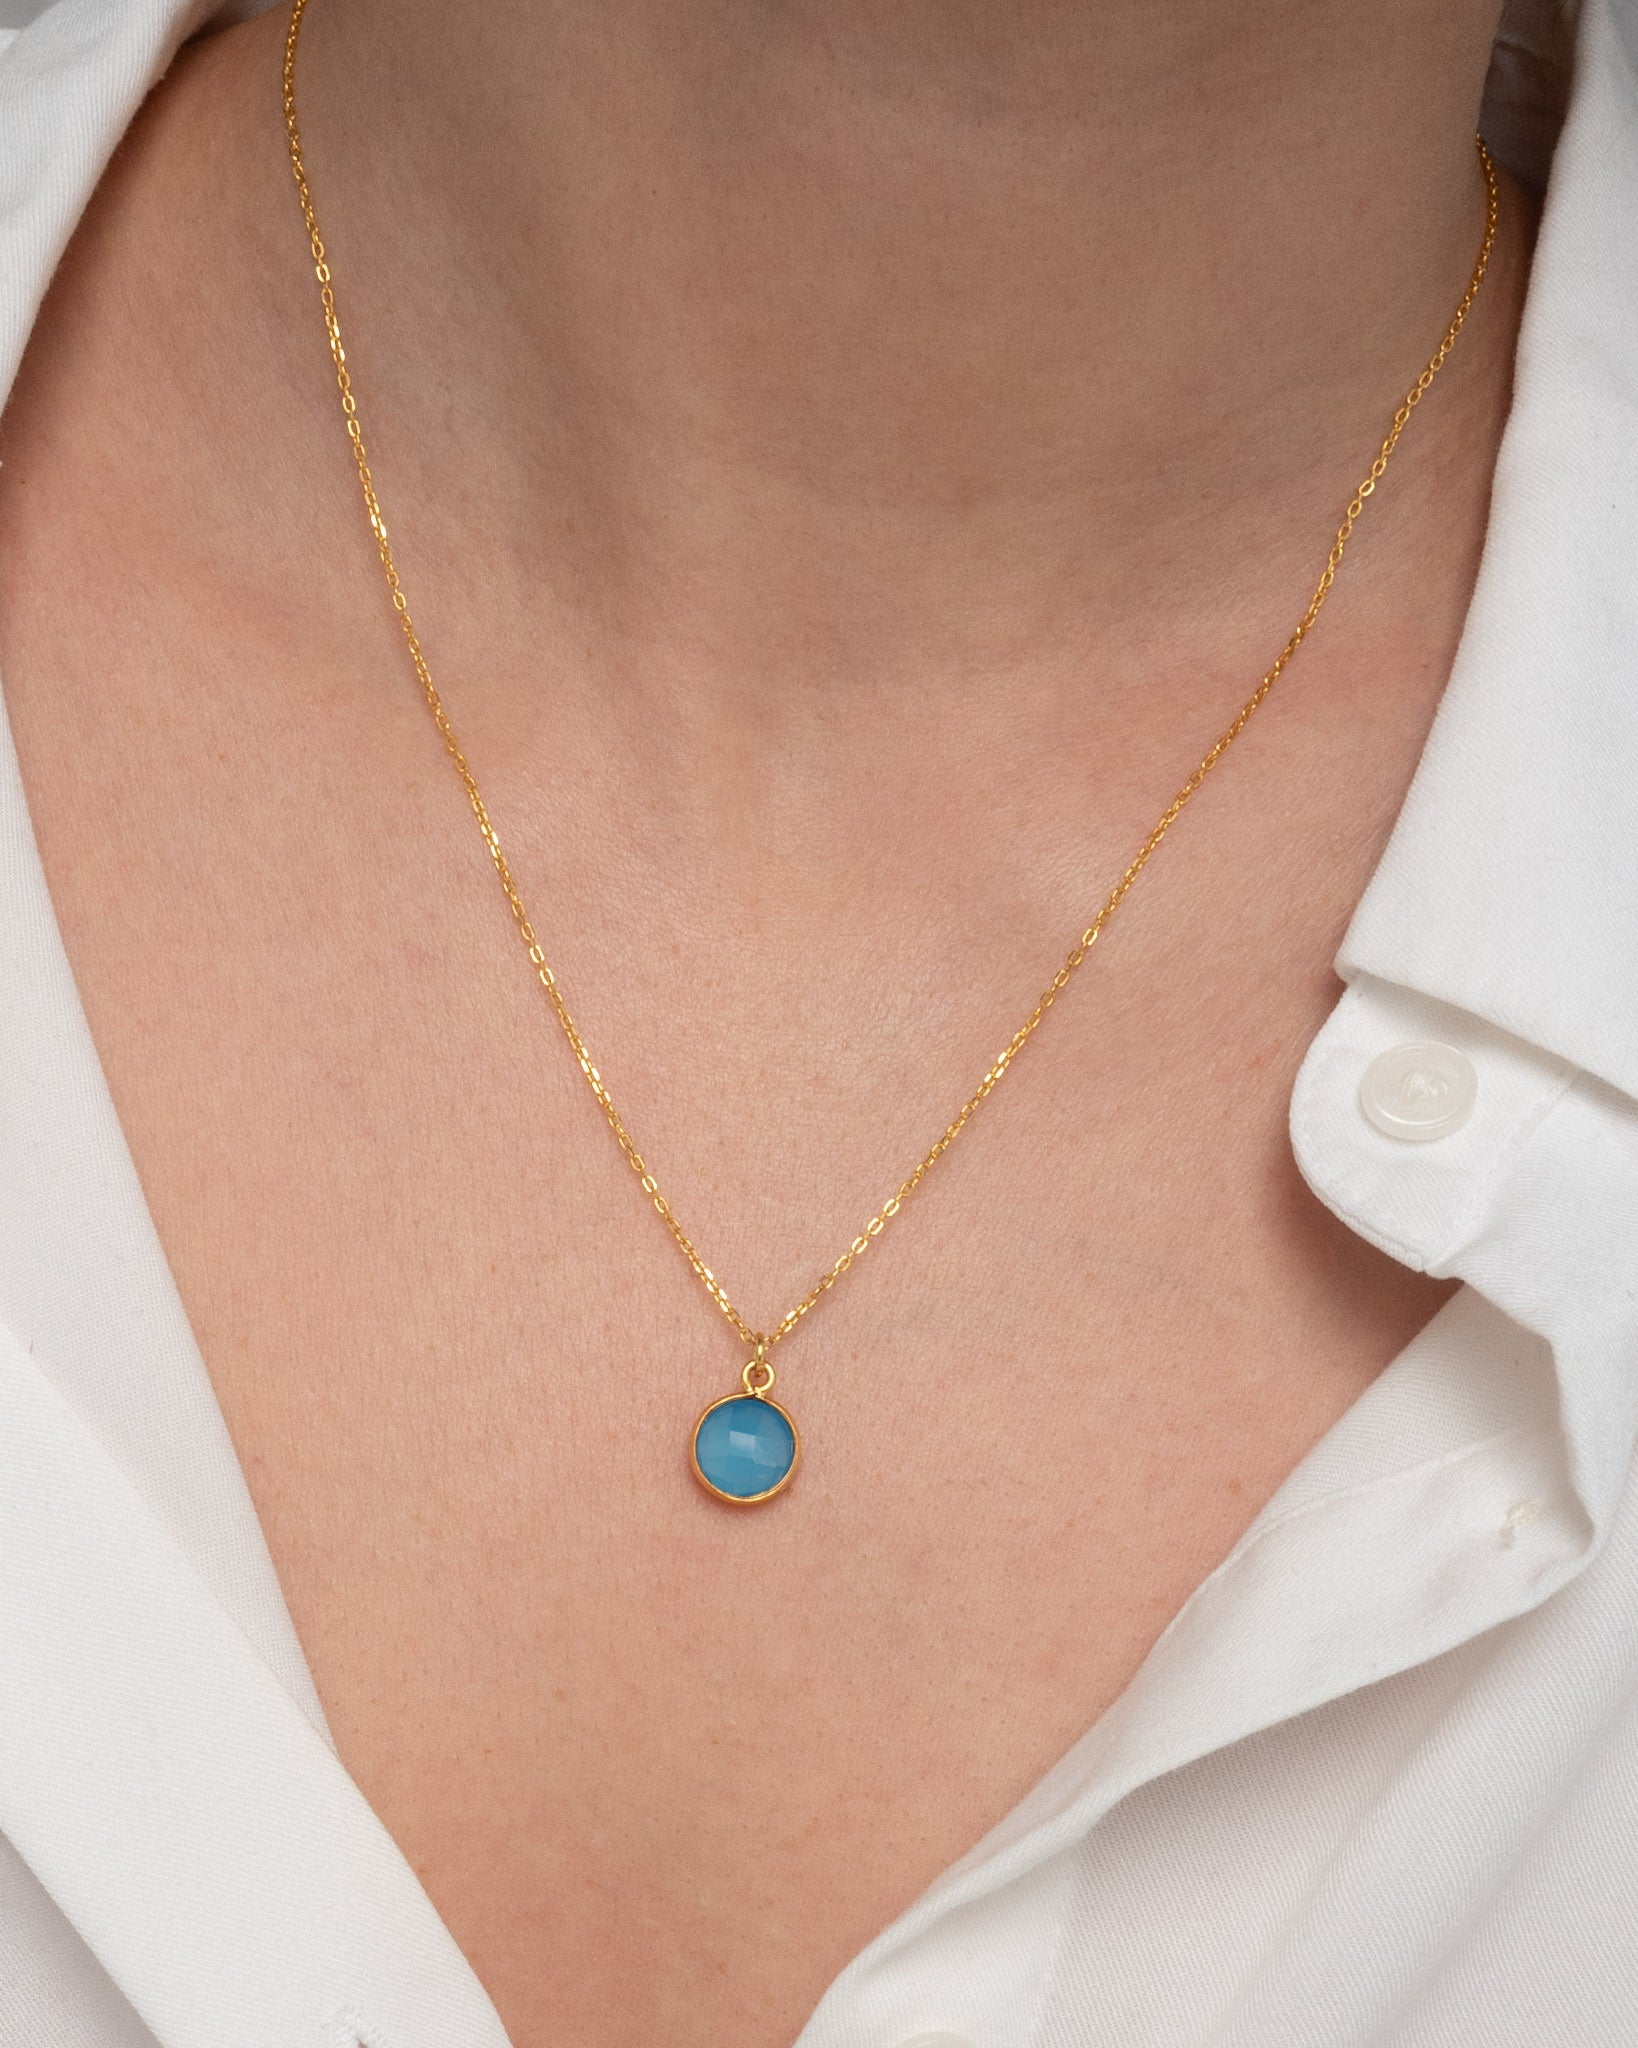 Halskette Eloise Blue Chalcedony - Fleurs des Prés Jewelry